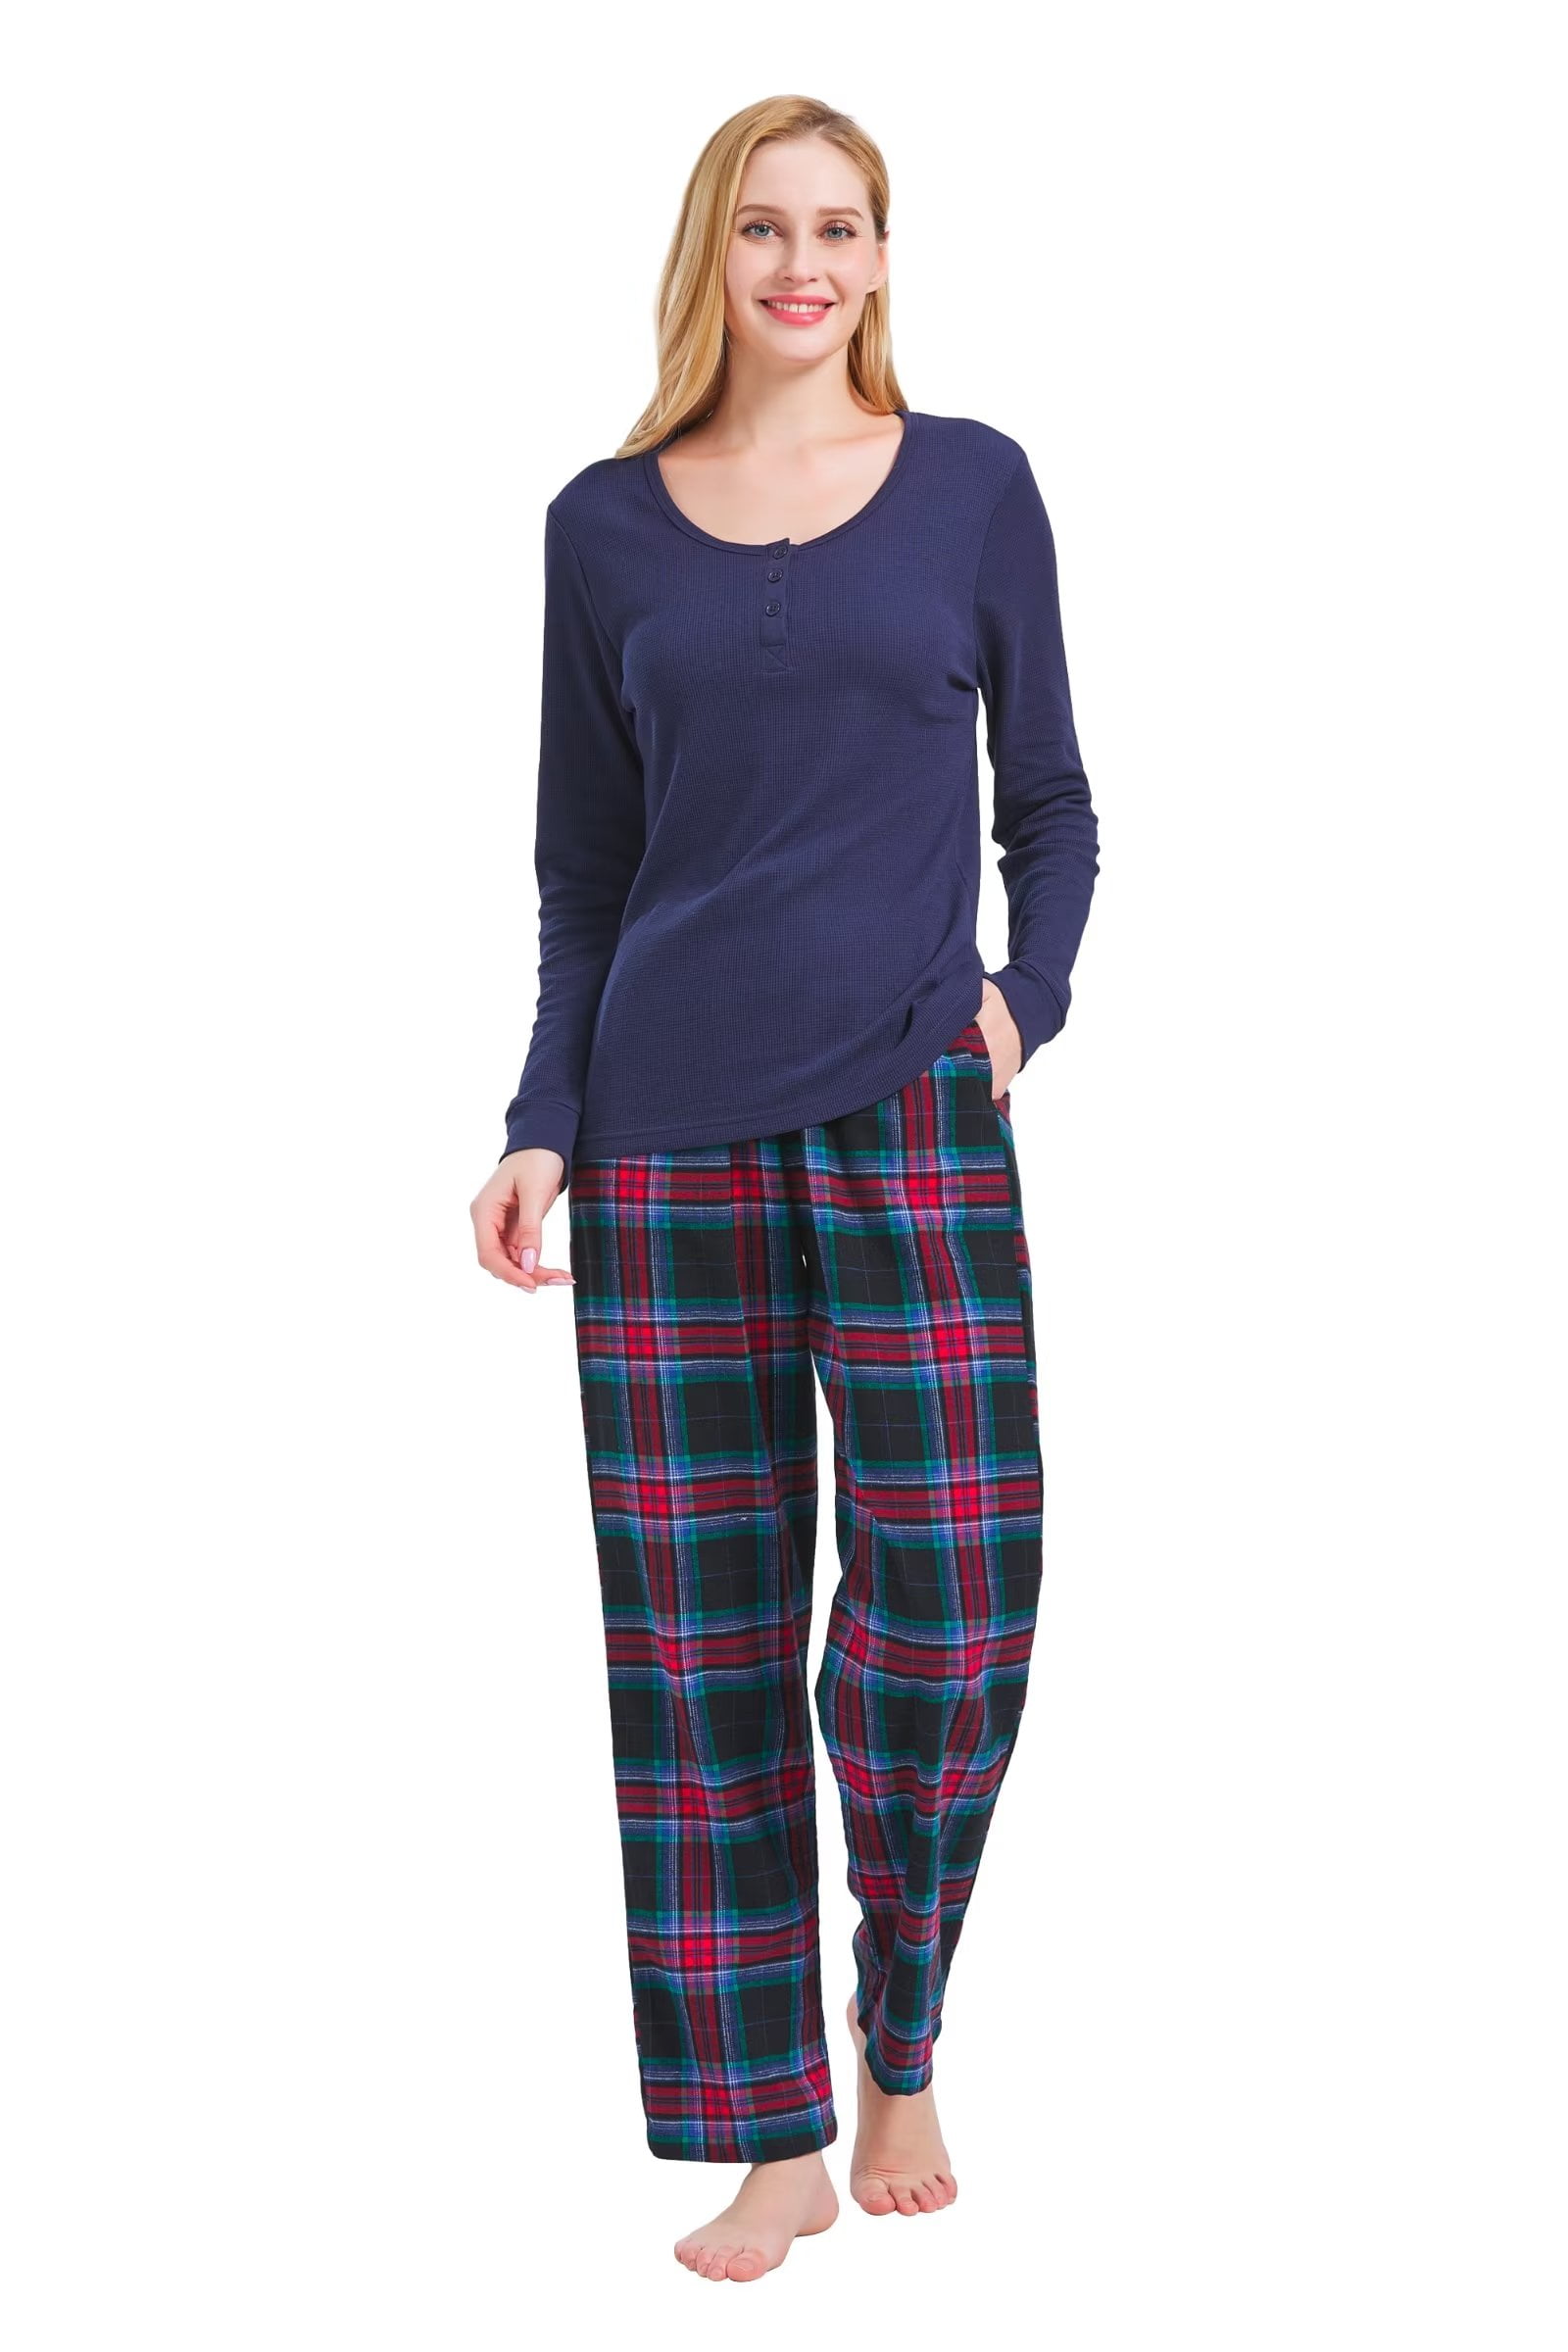 GLOBAL Women's Flannel Pajama Sets Knit Top Flannel Pants Sleepwear ...